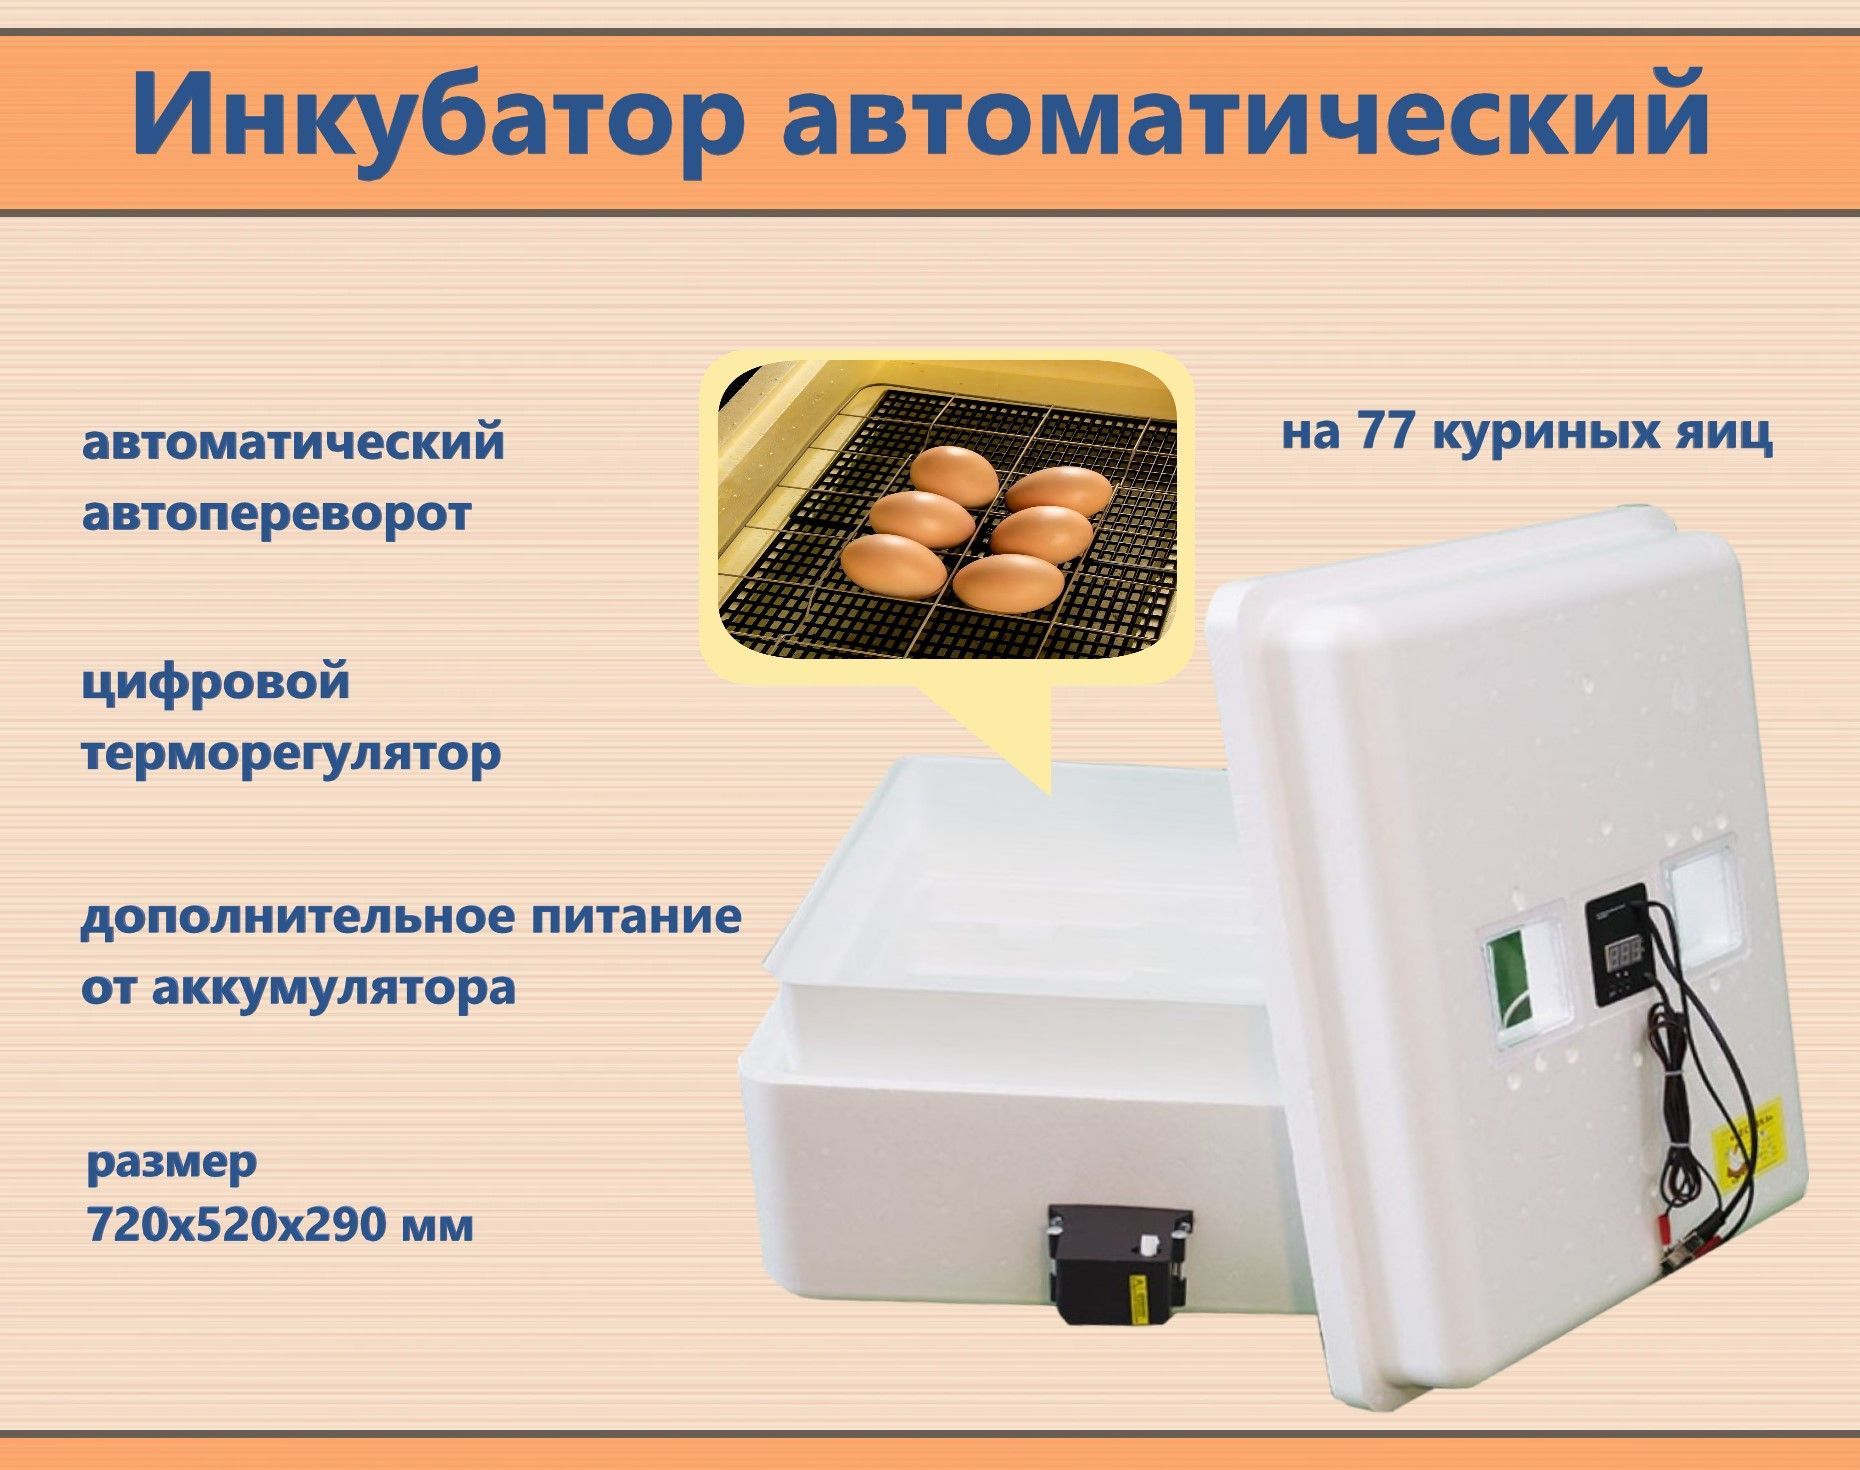 Инкубатор автоматический несушка 77. Автоматичний регулятор температури. Автоматизированных термостатов для отелей. Инк.(45)-36 яиц 220/12в цифровой терморегулятор.